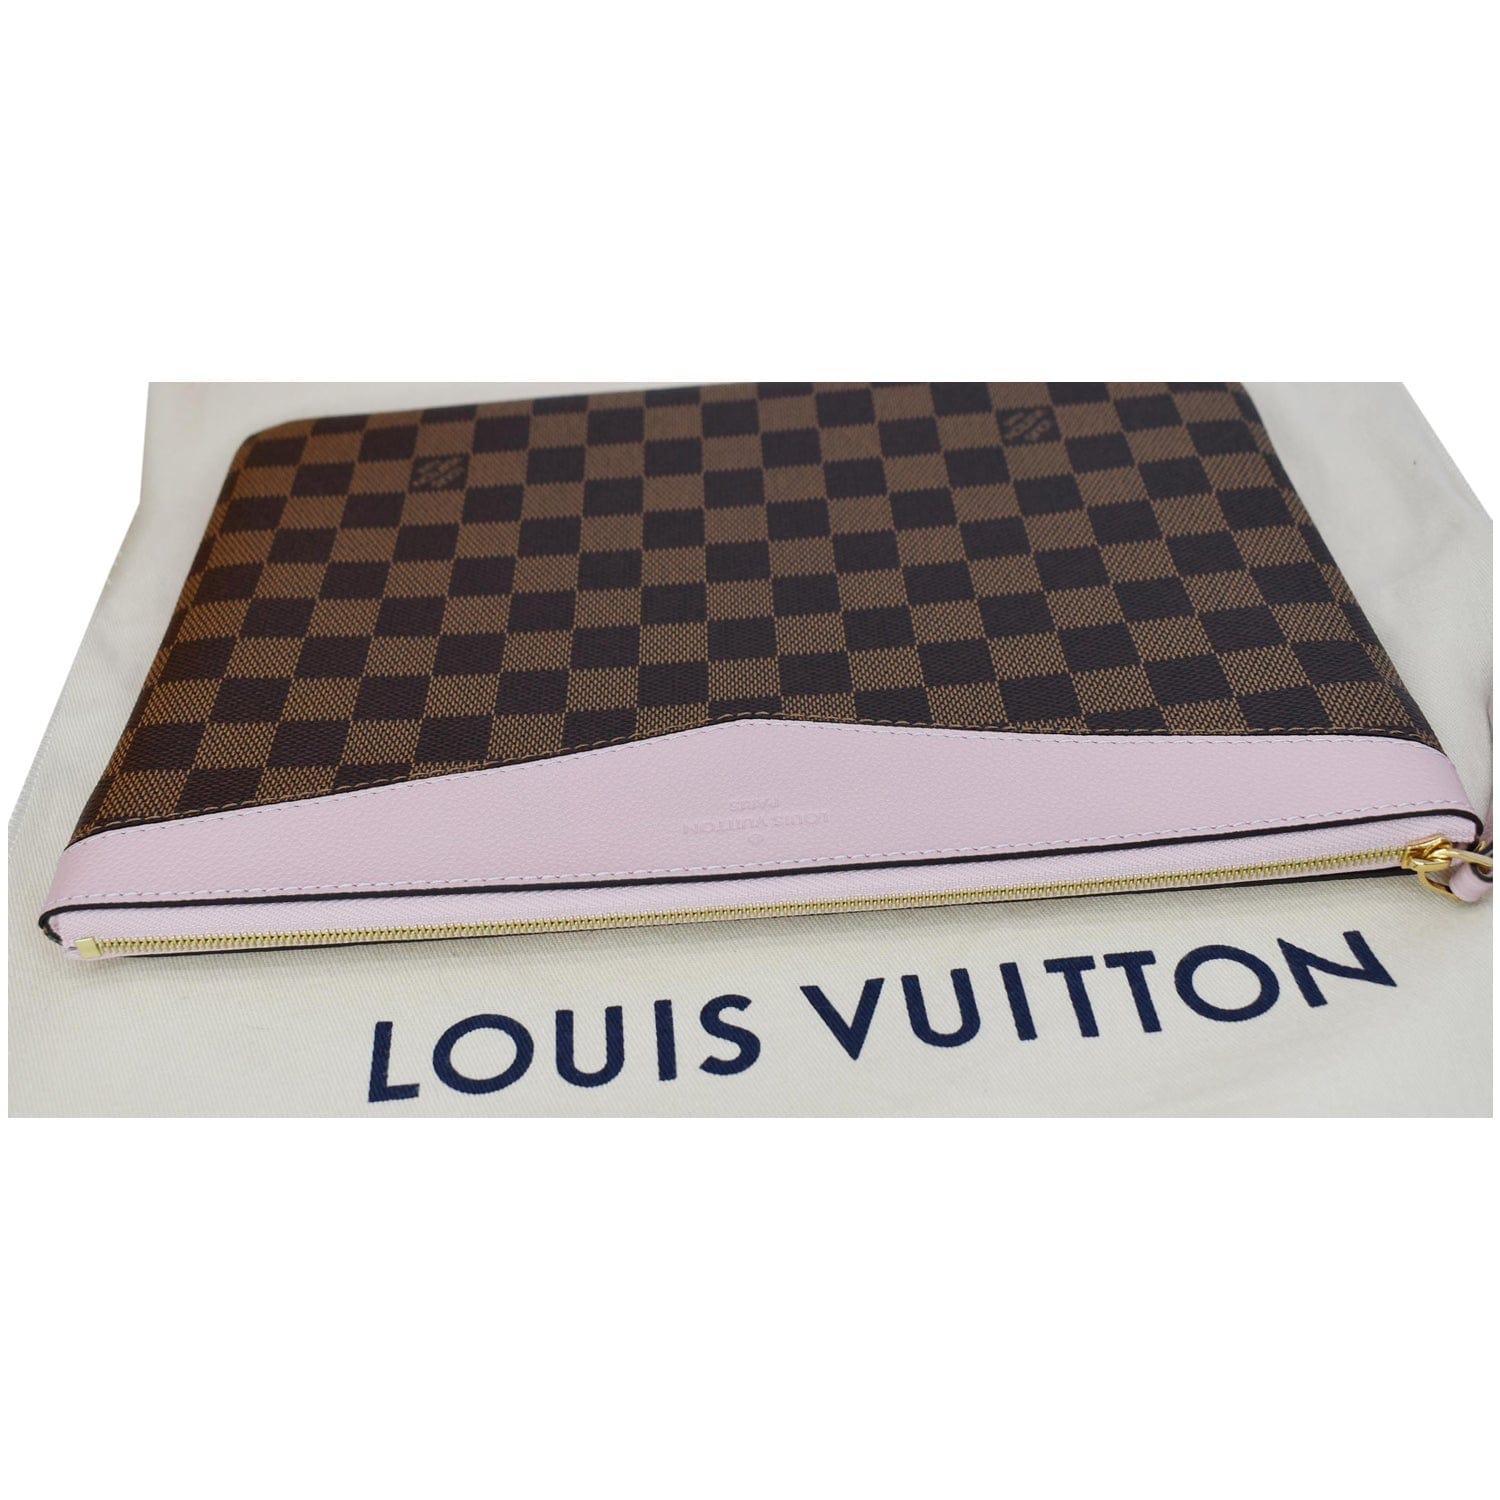 Louis Vuitton - Daily Pouch - ICON-ICON